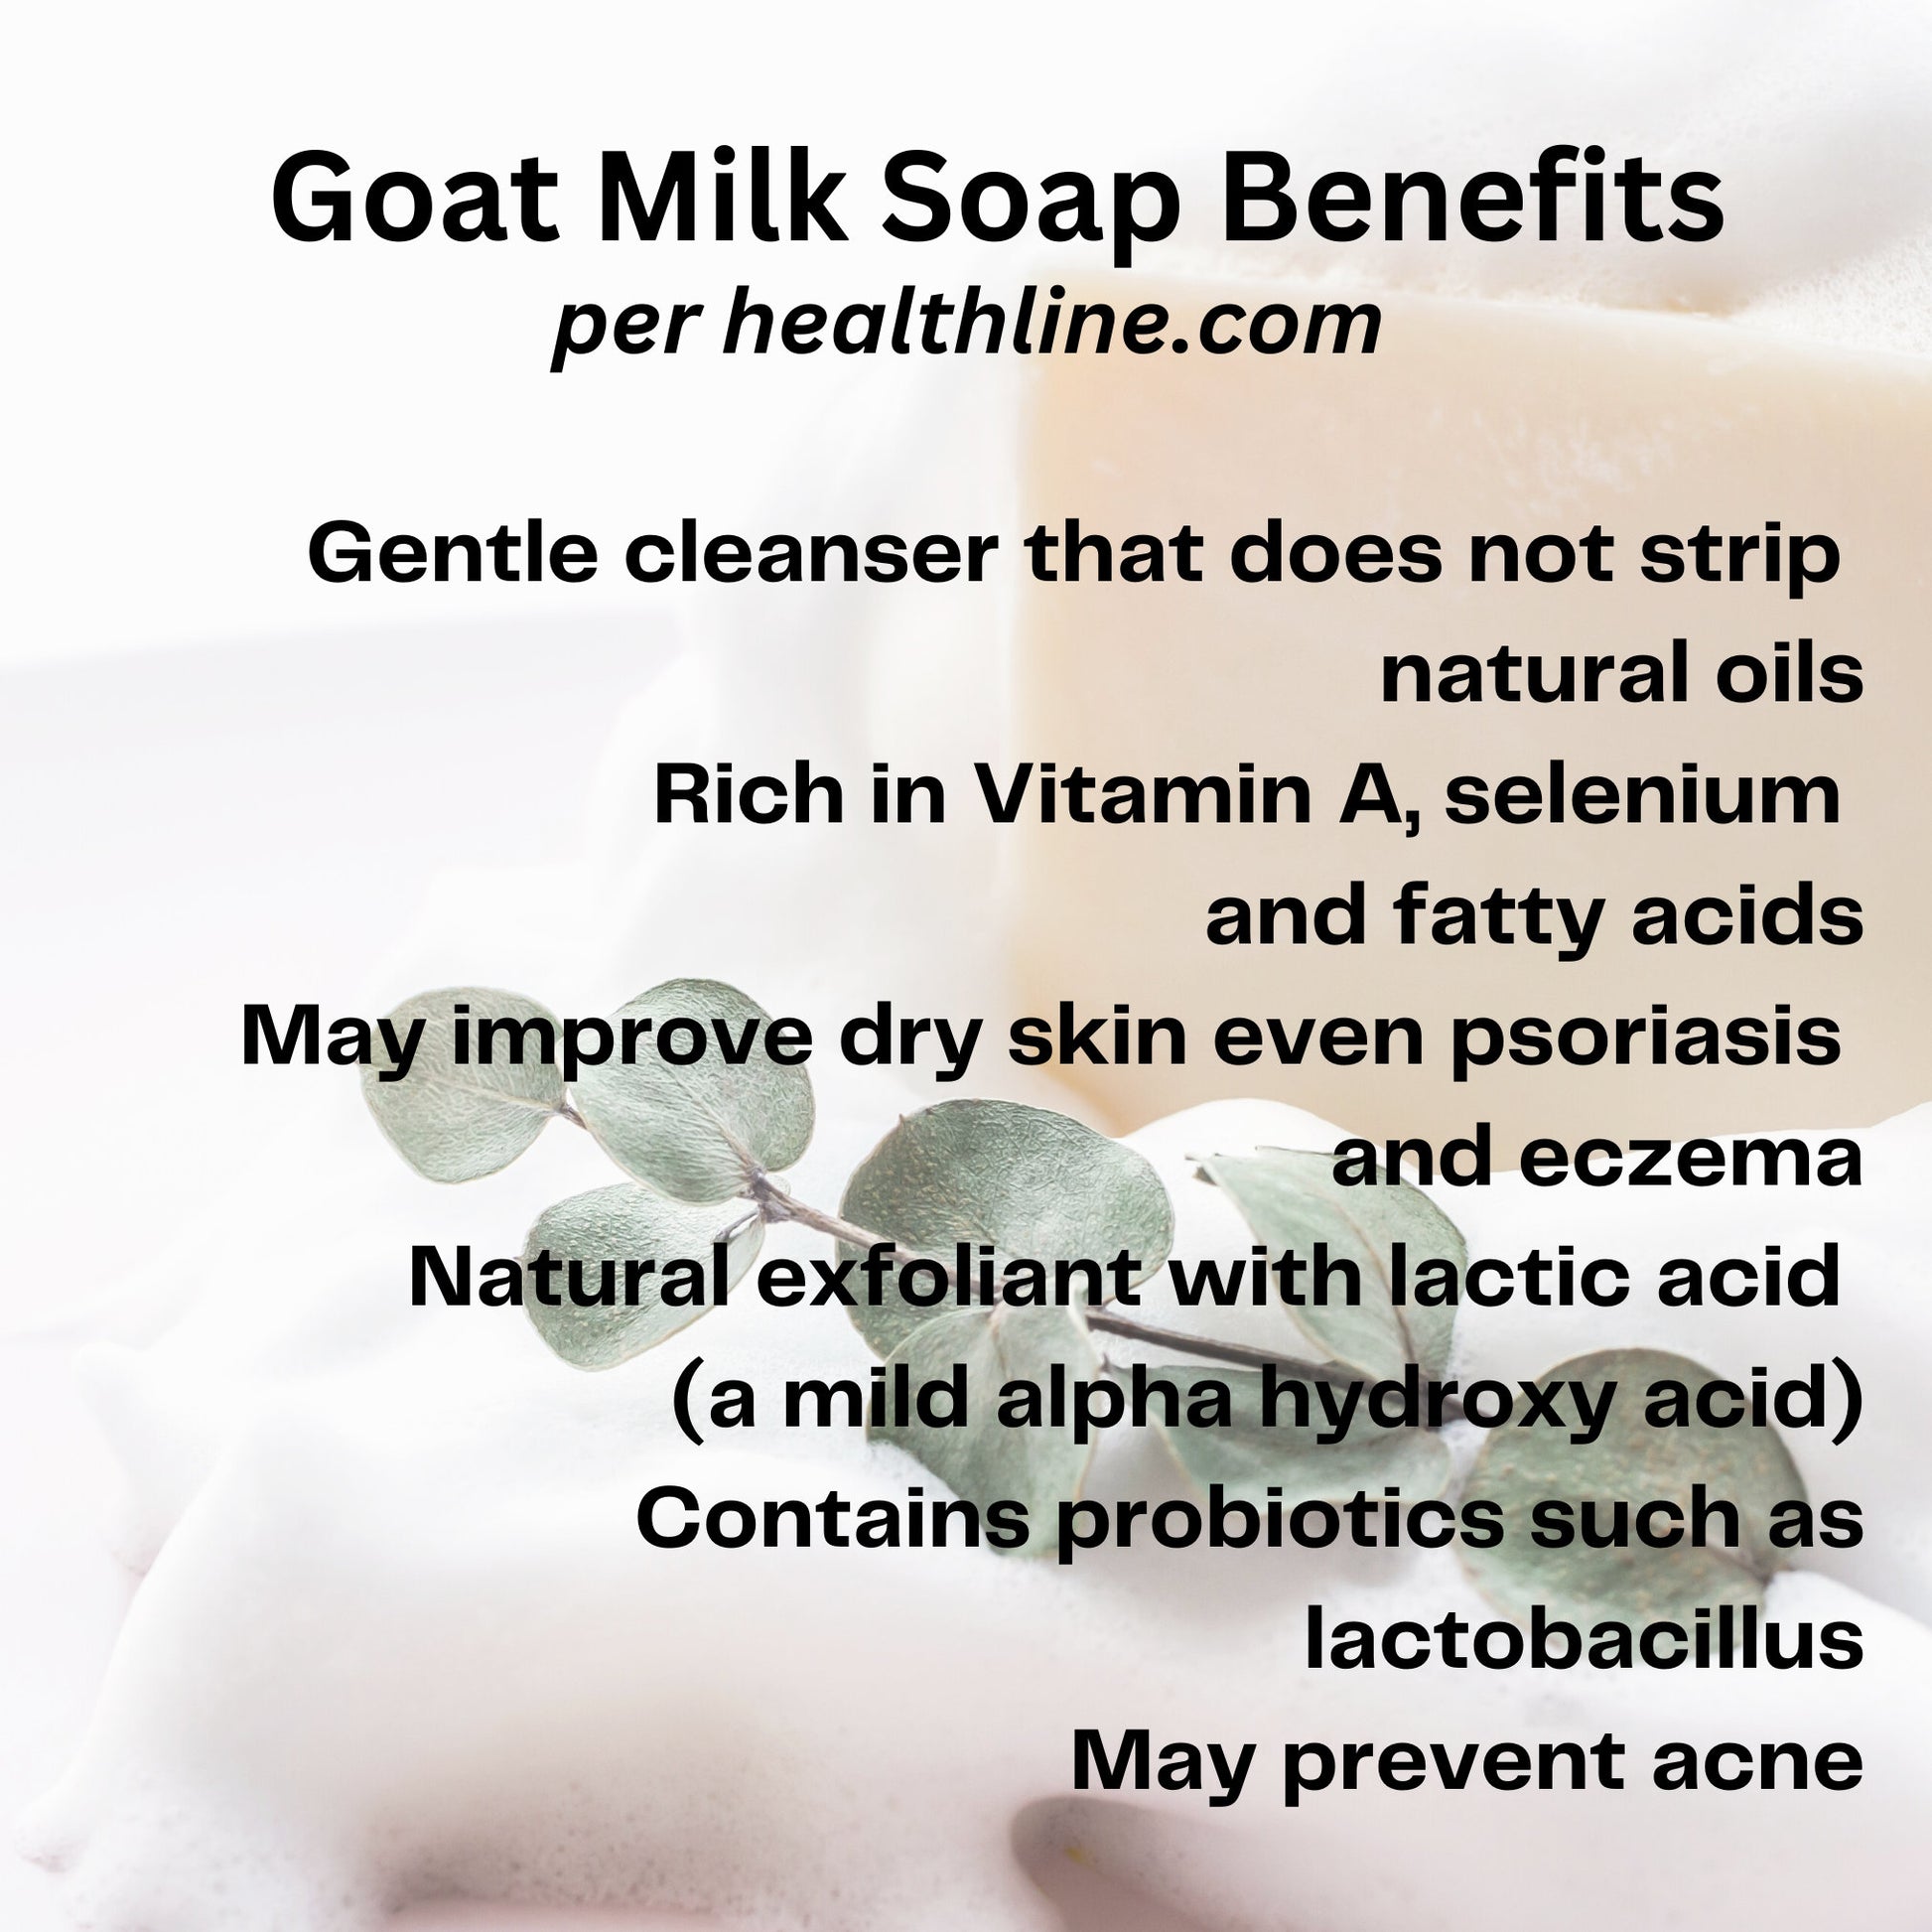 Almond Vanilla Goat Milk Soap